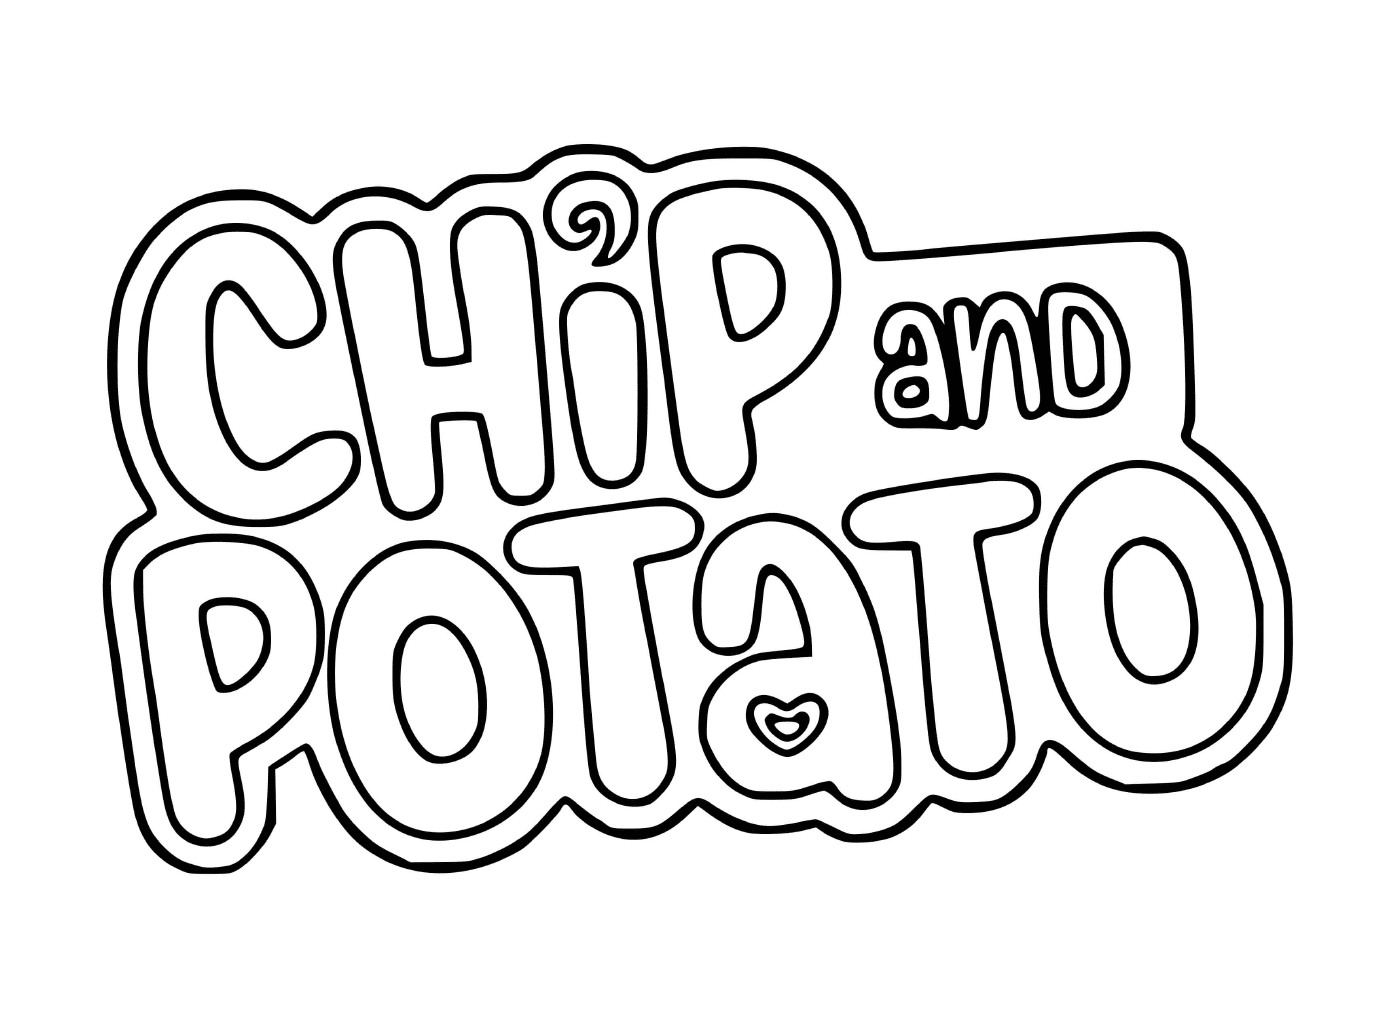  Logotipo de patatas fritas y patatas 